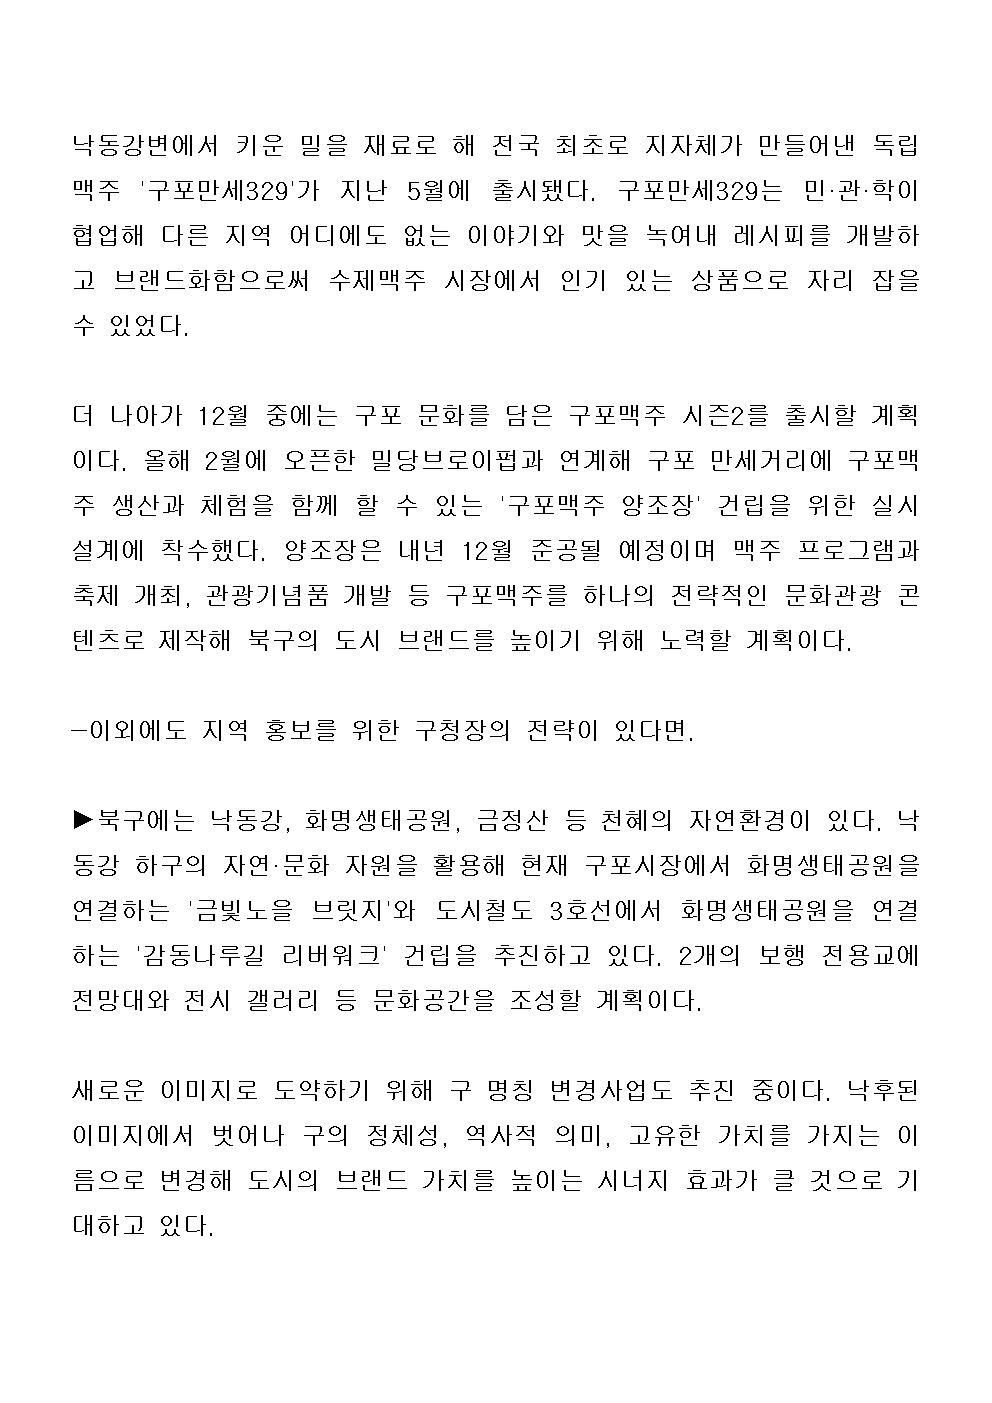 (20.10.08) 부산 북구청장, 30만 구민과 함께 새로운 미래 그려가겠다_구청장 인터뷰 (3)